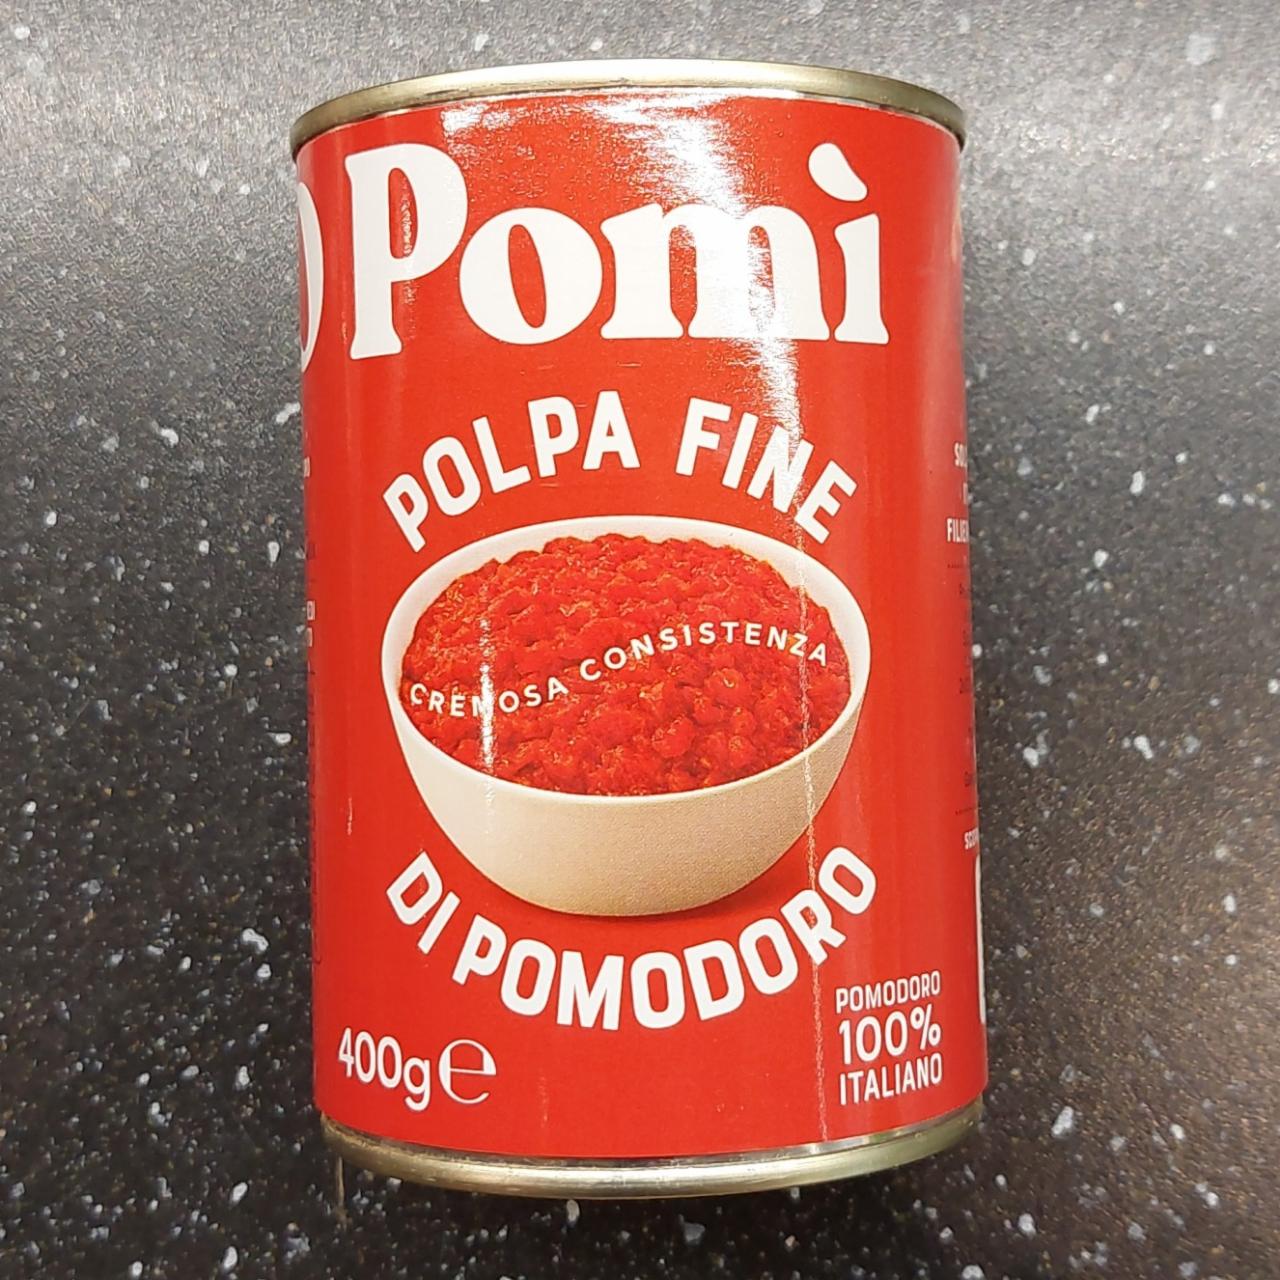 Fotografie - O Pomí polpa fine di pomodoro